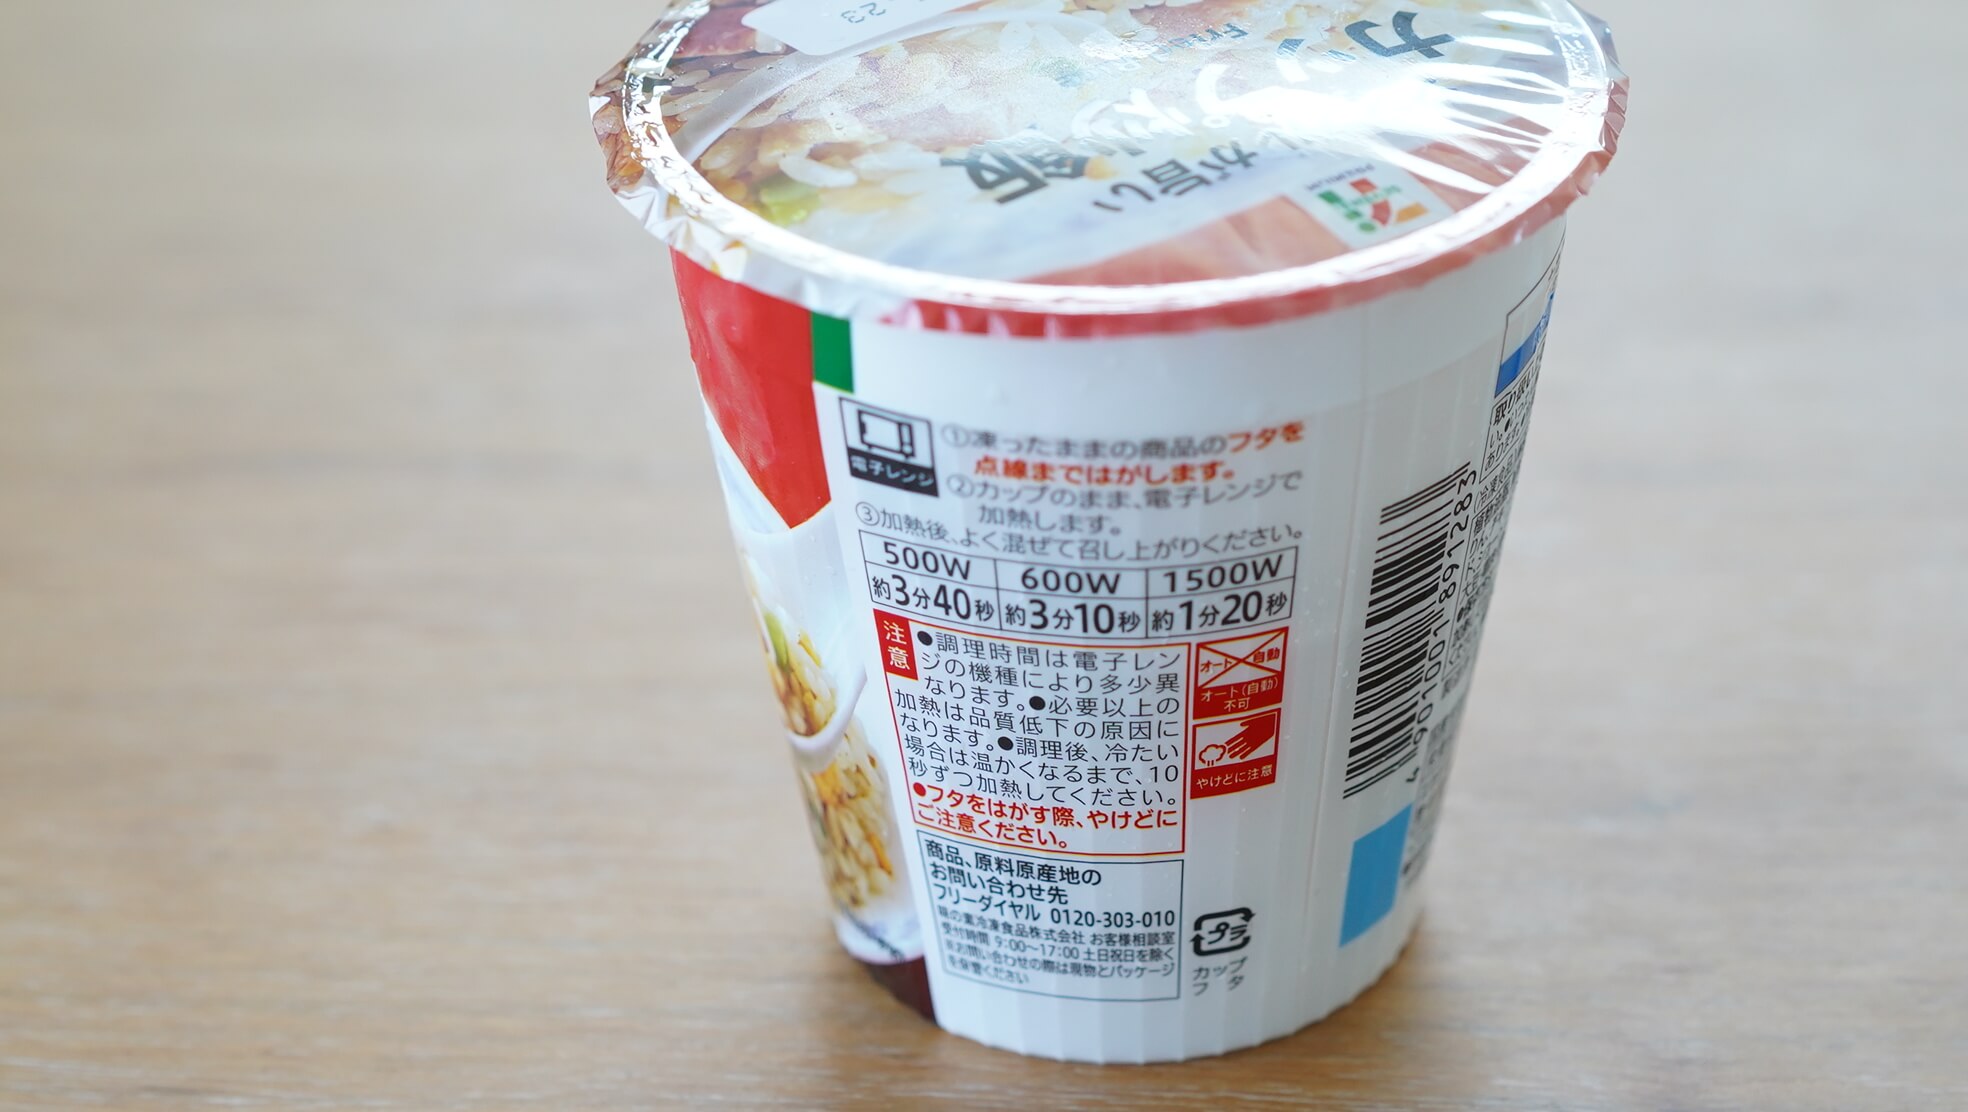 セブンイレブンのカップ型冷凍食品「シンプルで美味しい炒飯」の側面の写真